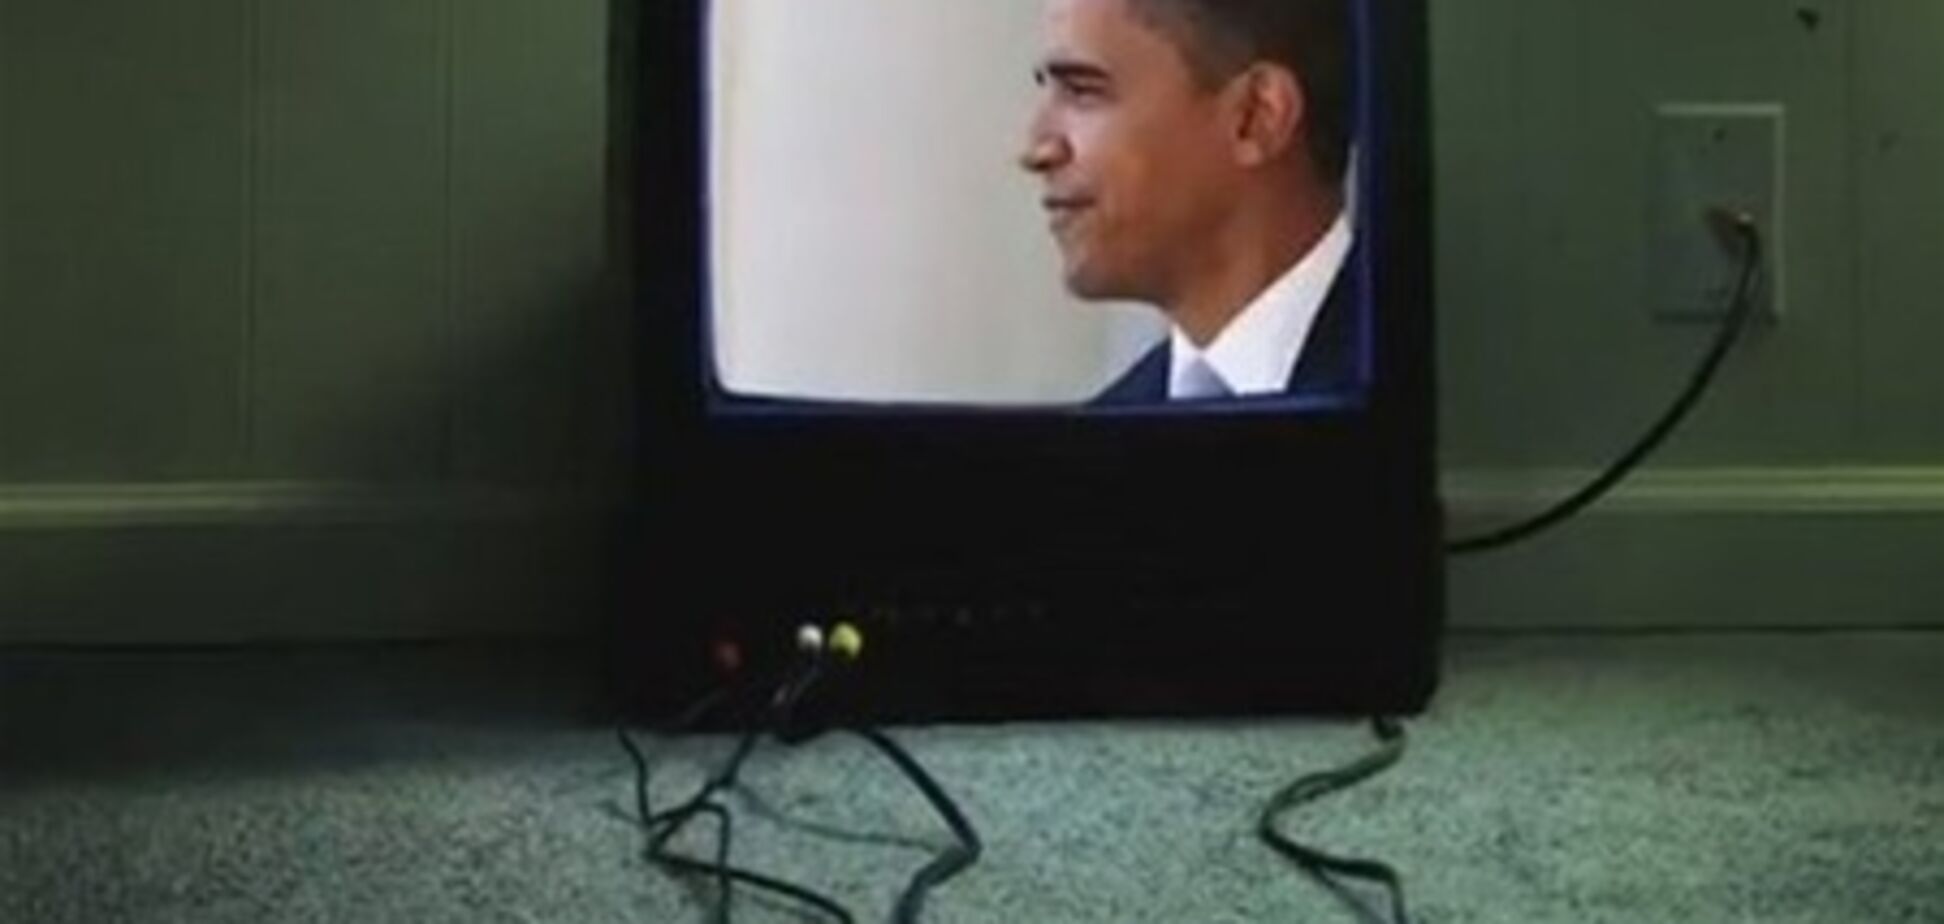 В предвыборном ролике республиканцы сравнили Обаму с Ахмадинеджадом. Видео